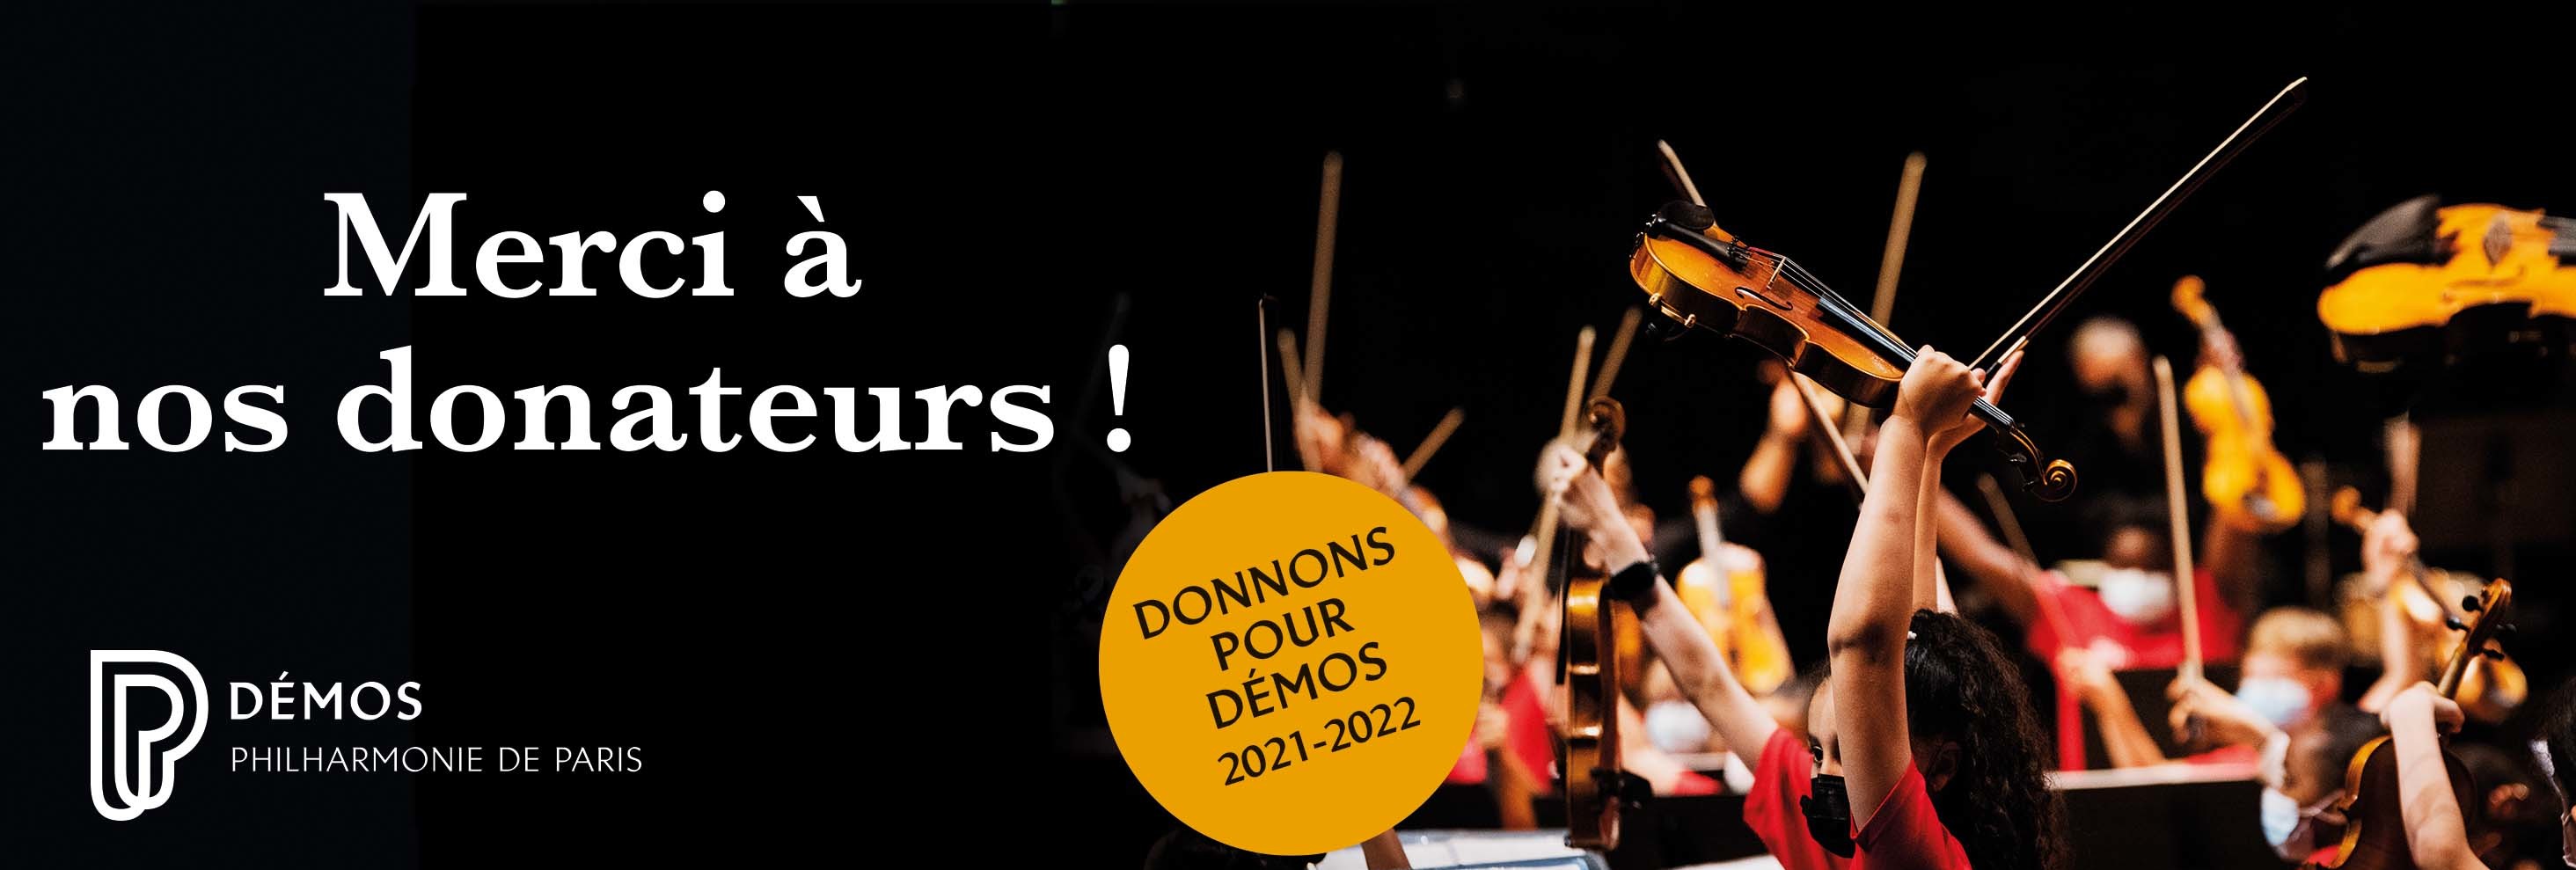 Succès de la campagne Donnons pour Démos 2021-2022 !